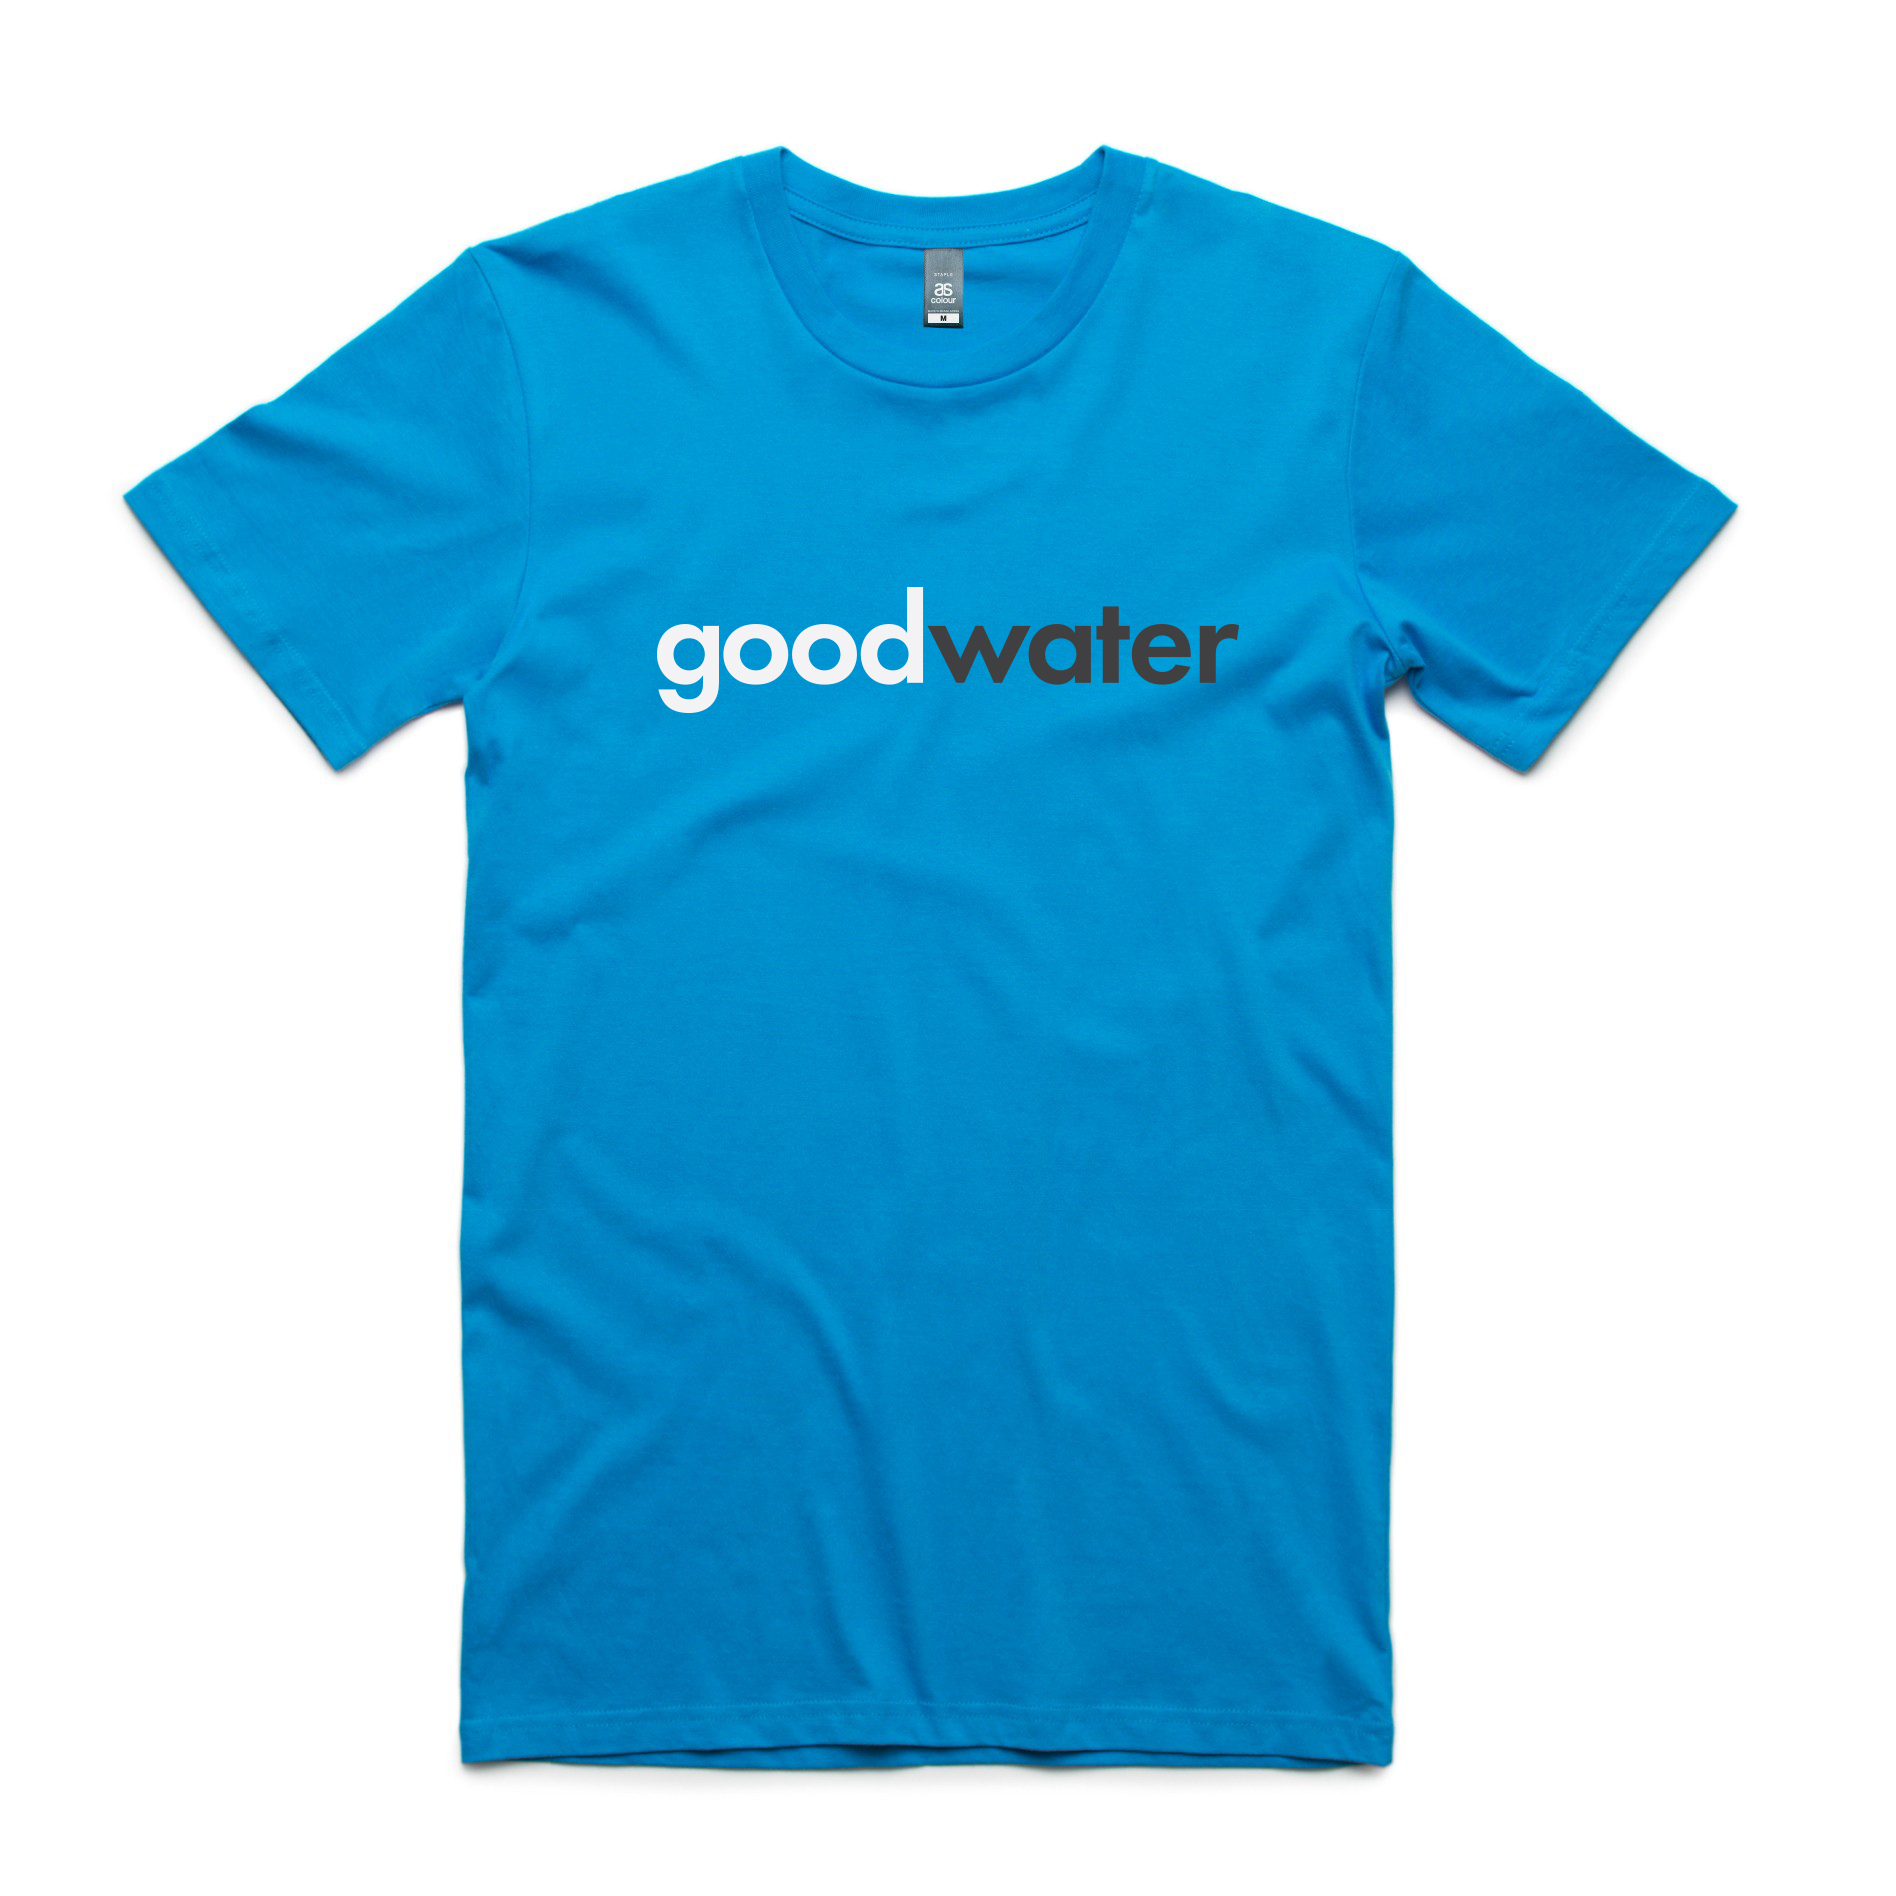 T shirt goodwater front.jpg